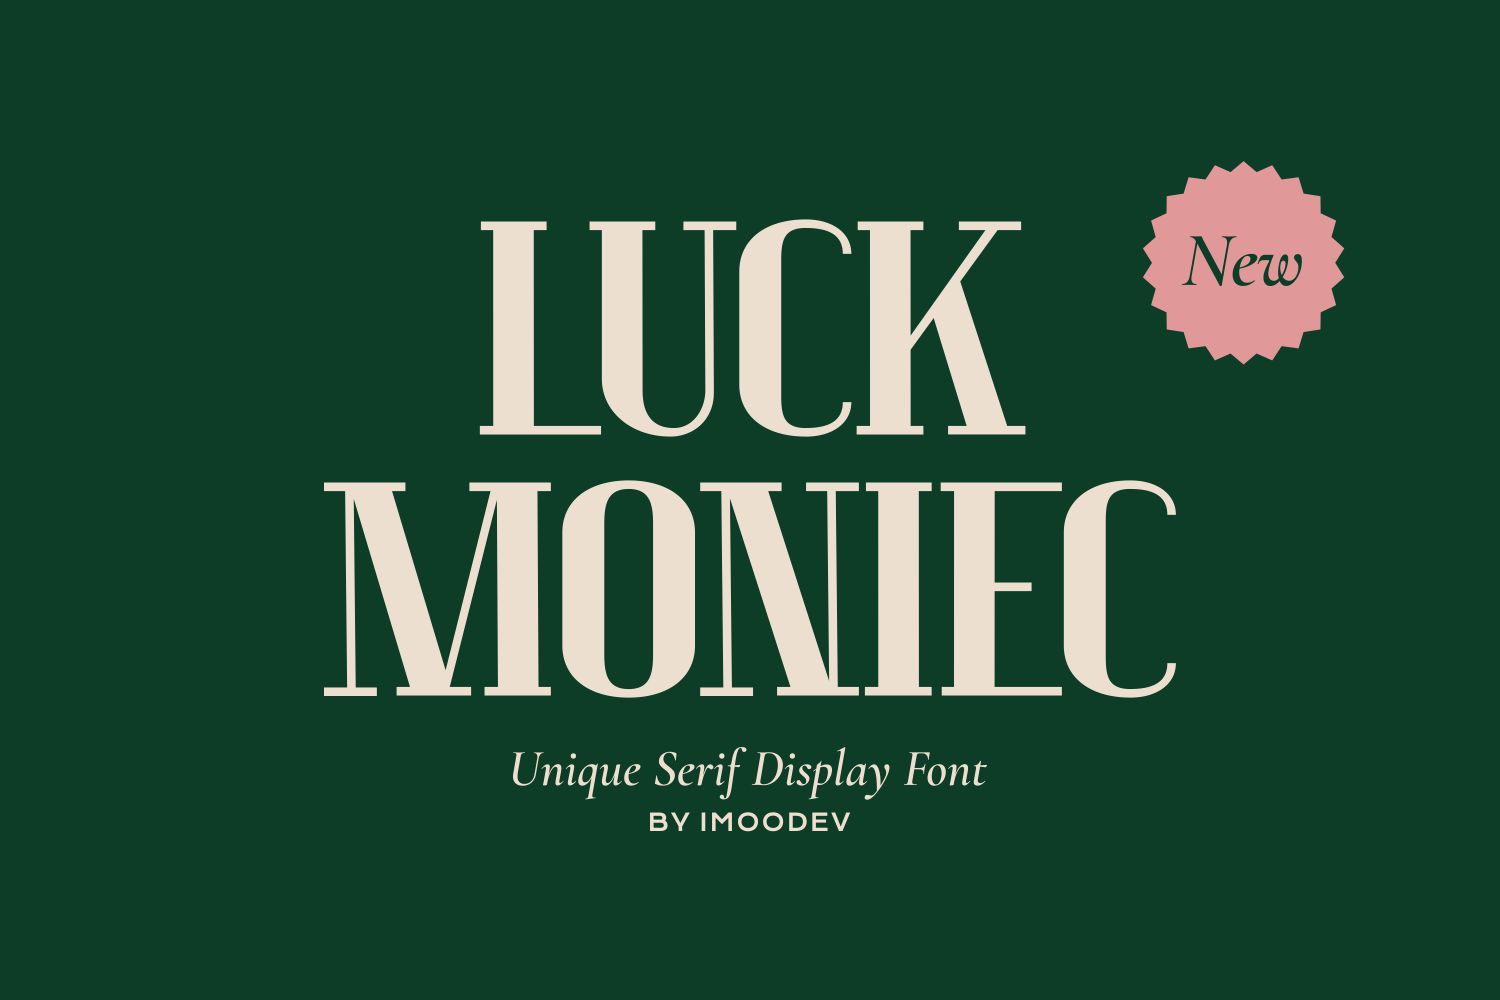 Luck Moniec (1)